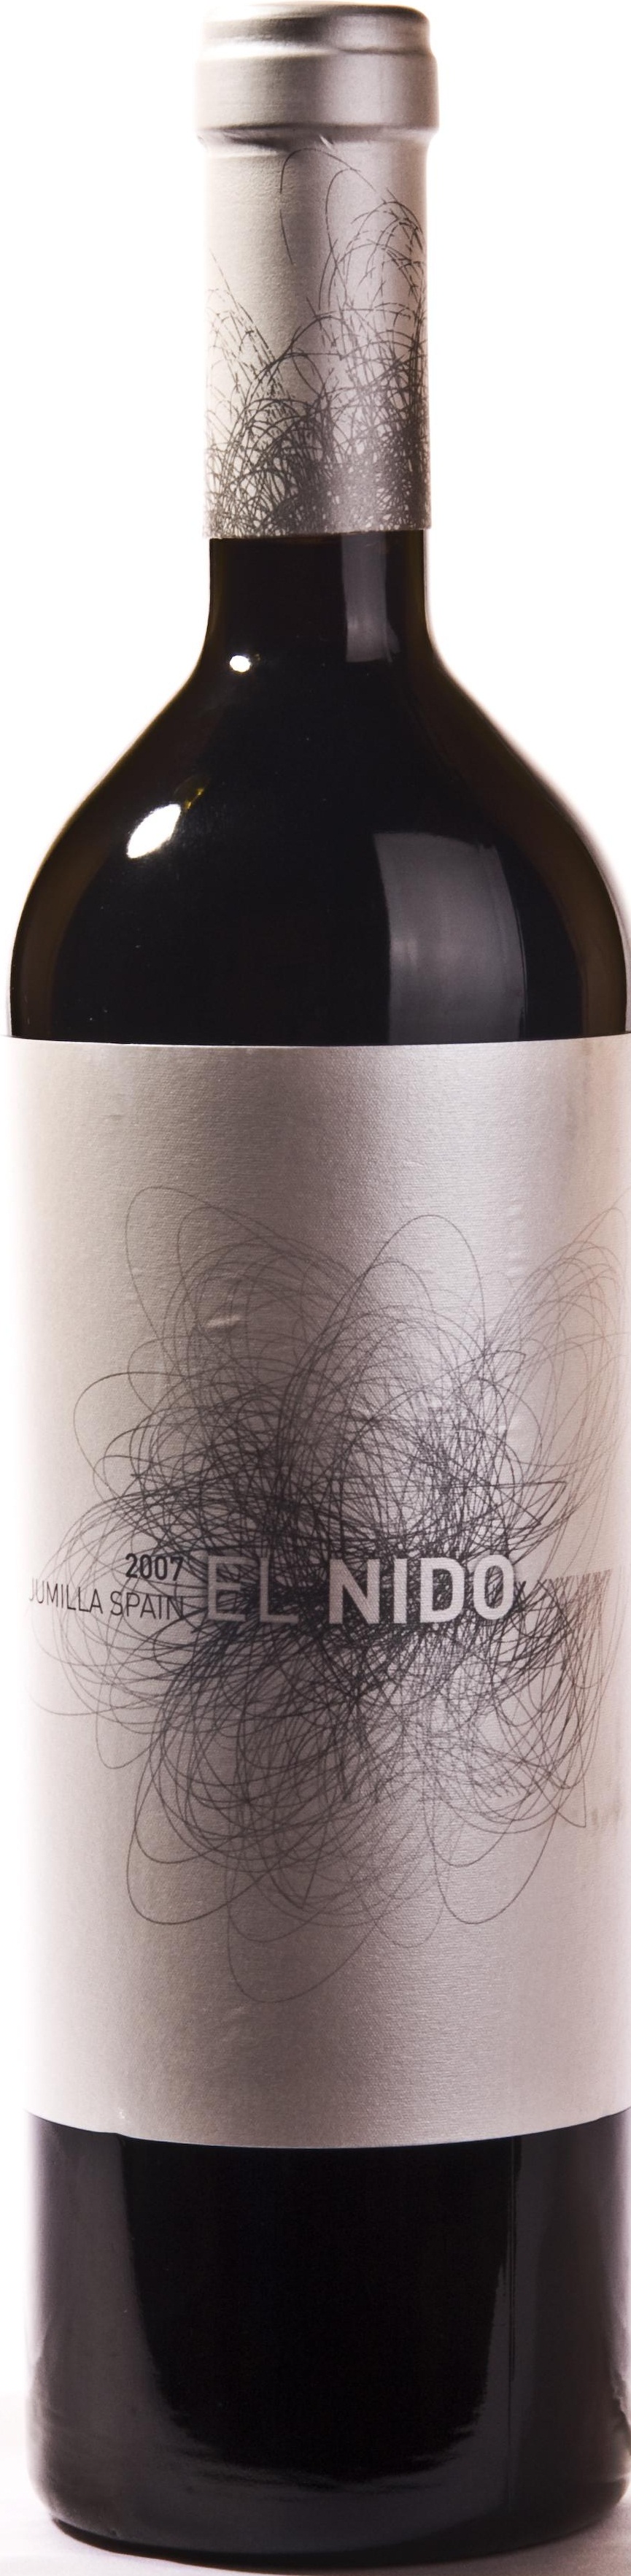 Imagen de la botella de Vino El Nido